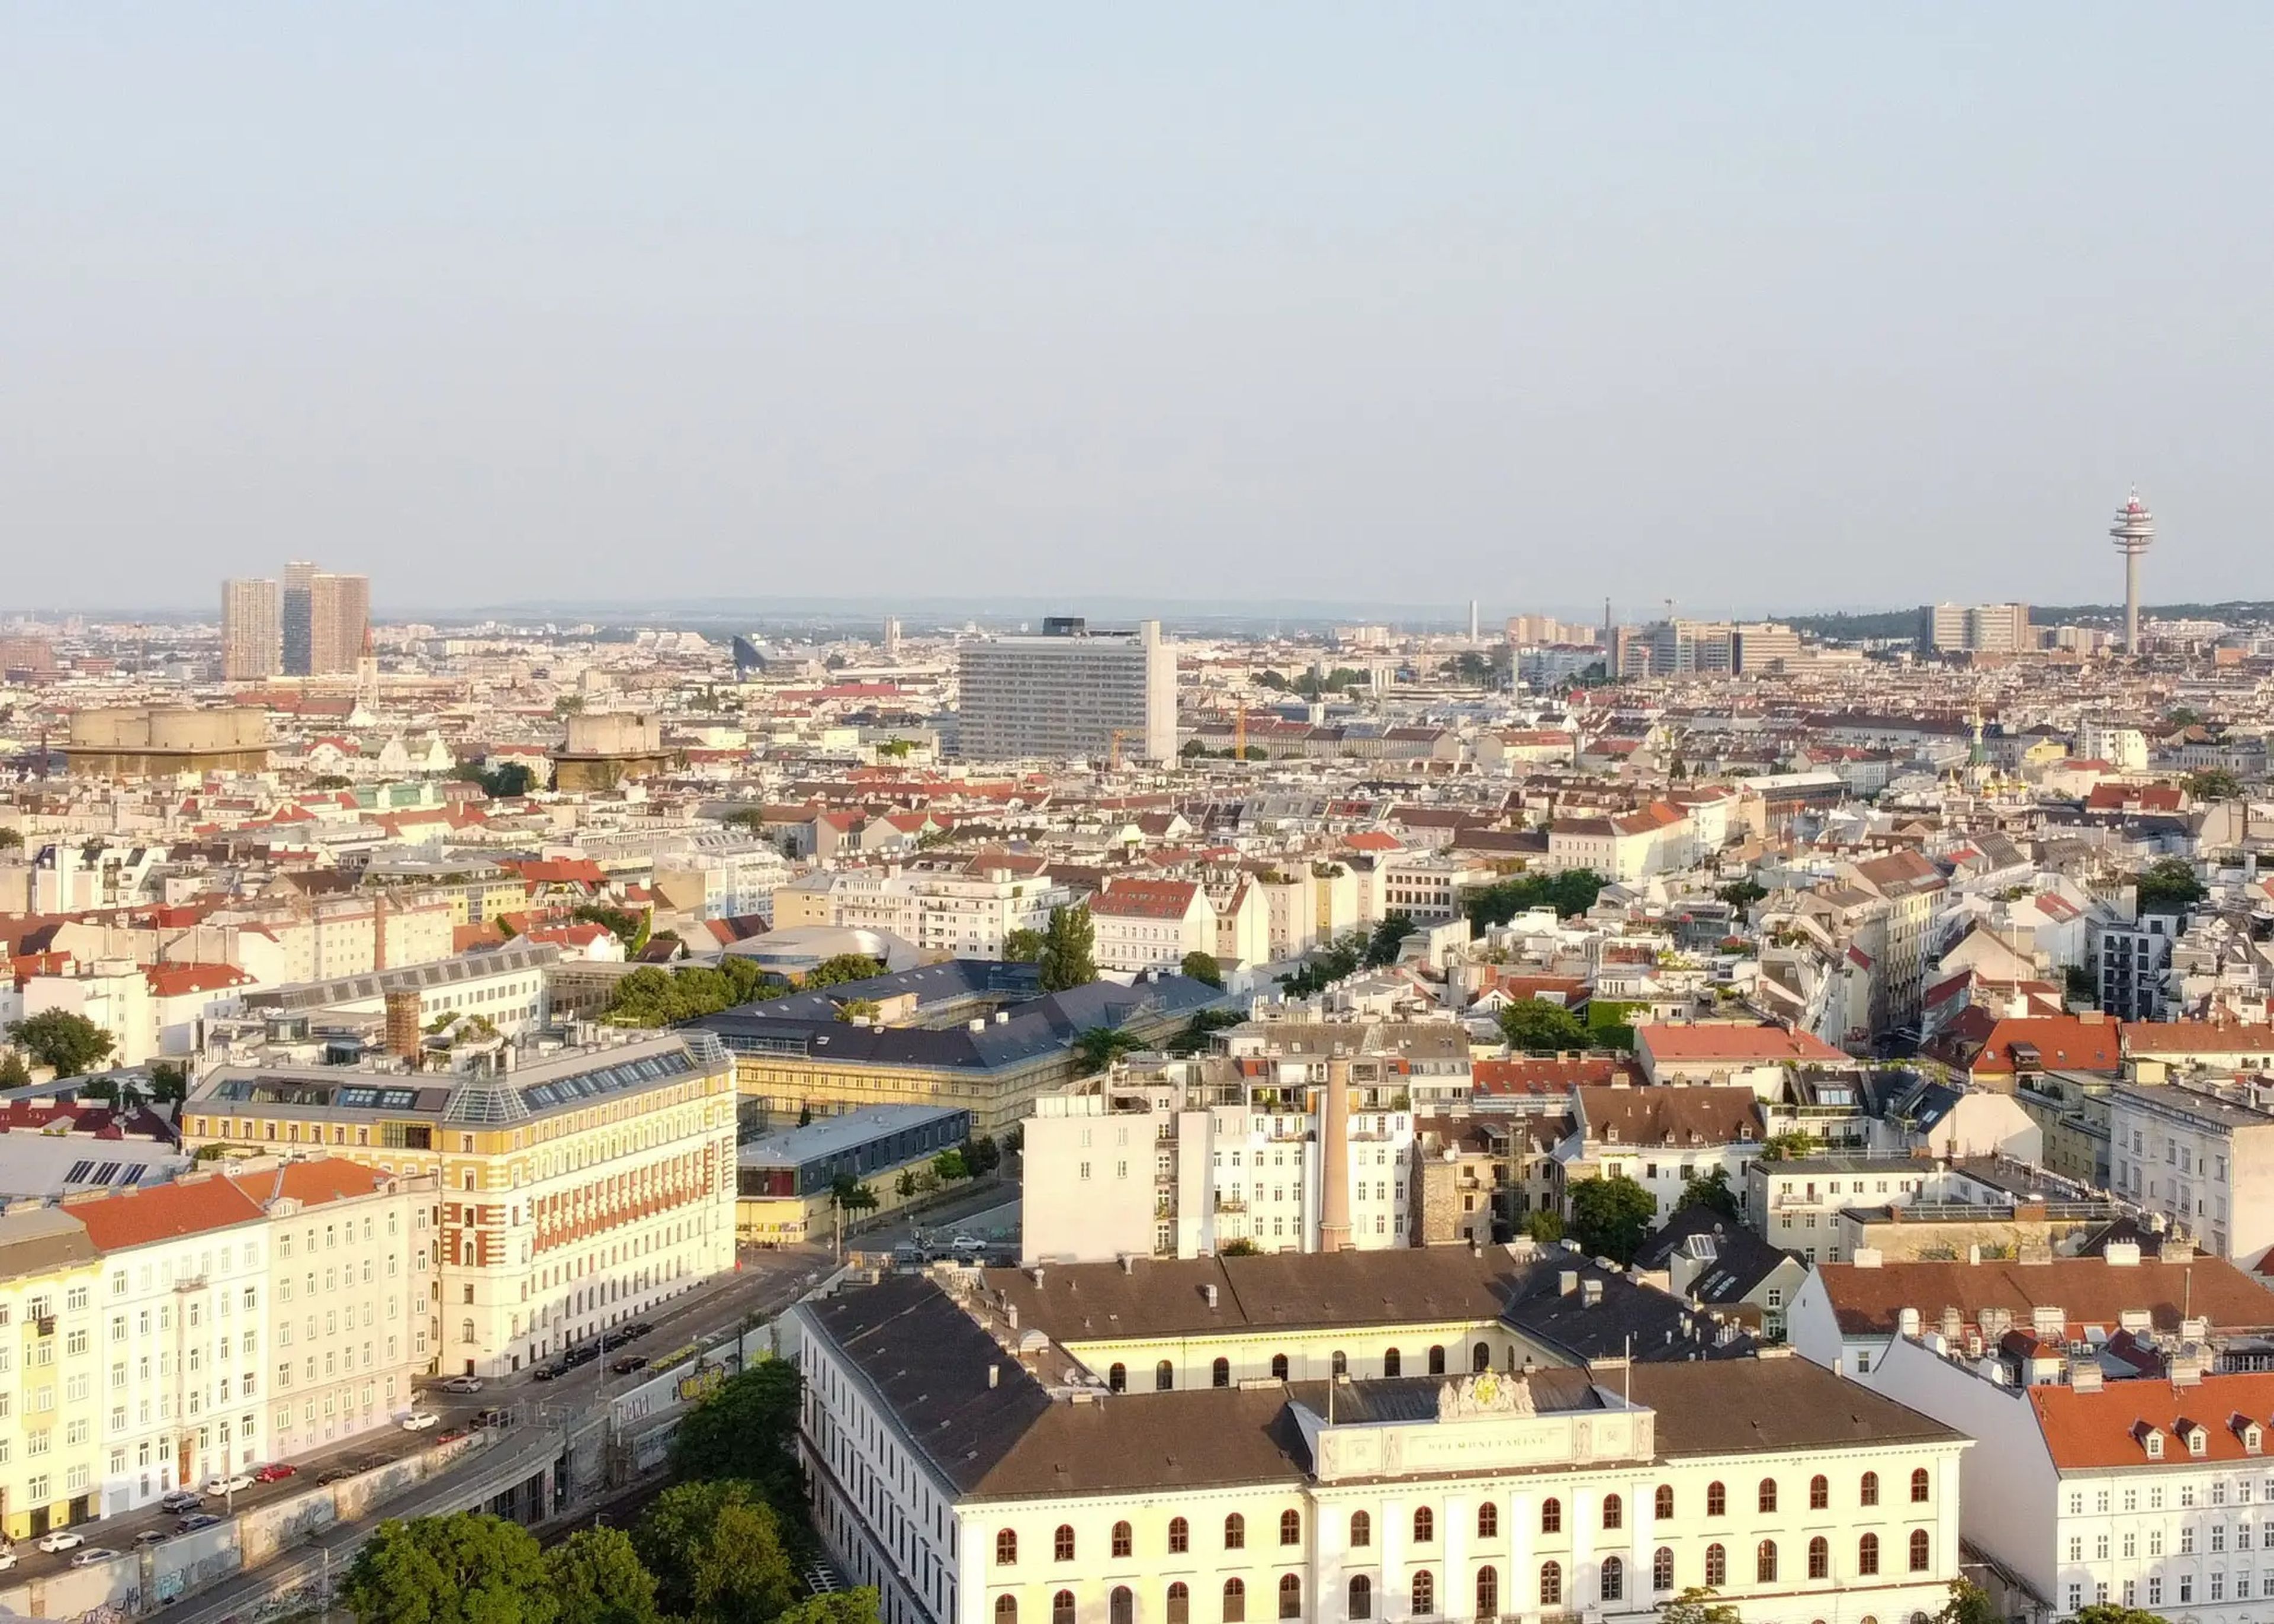 Vista de Viena en Austria.